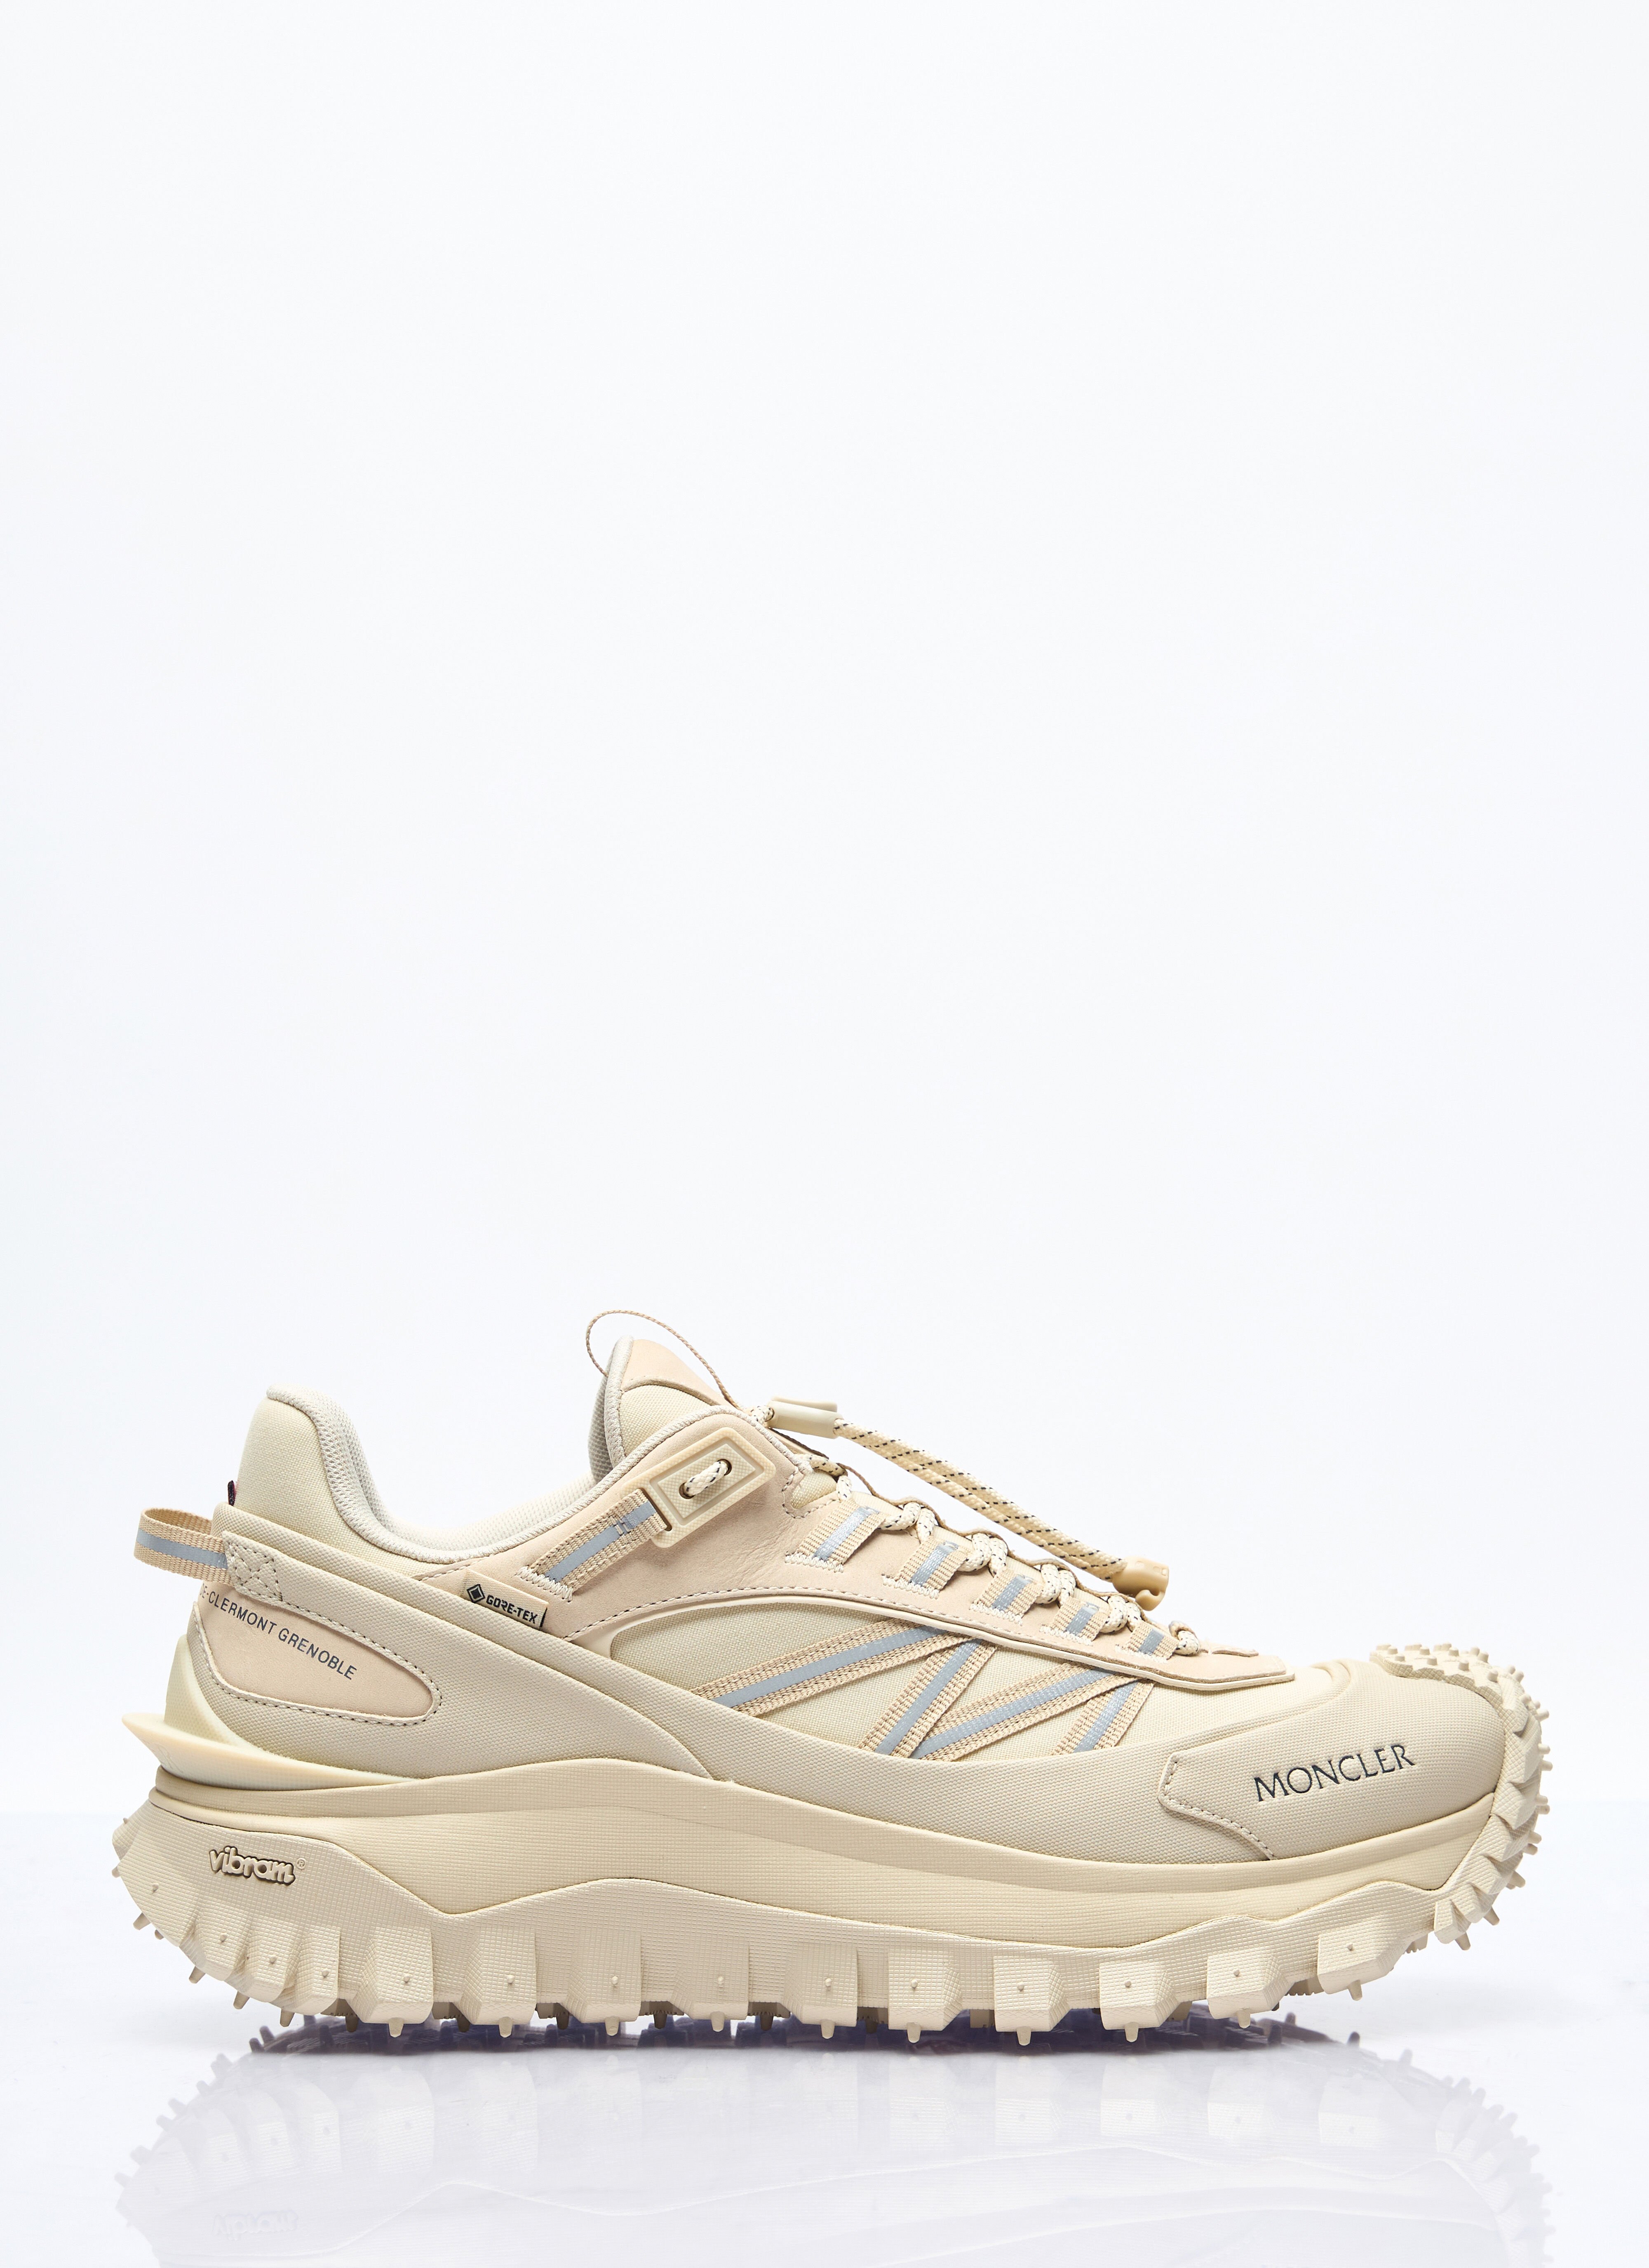 Vivienne Westwood TrailGrip GTX Sneakers Cream vvw0157004